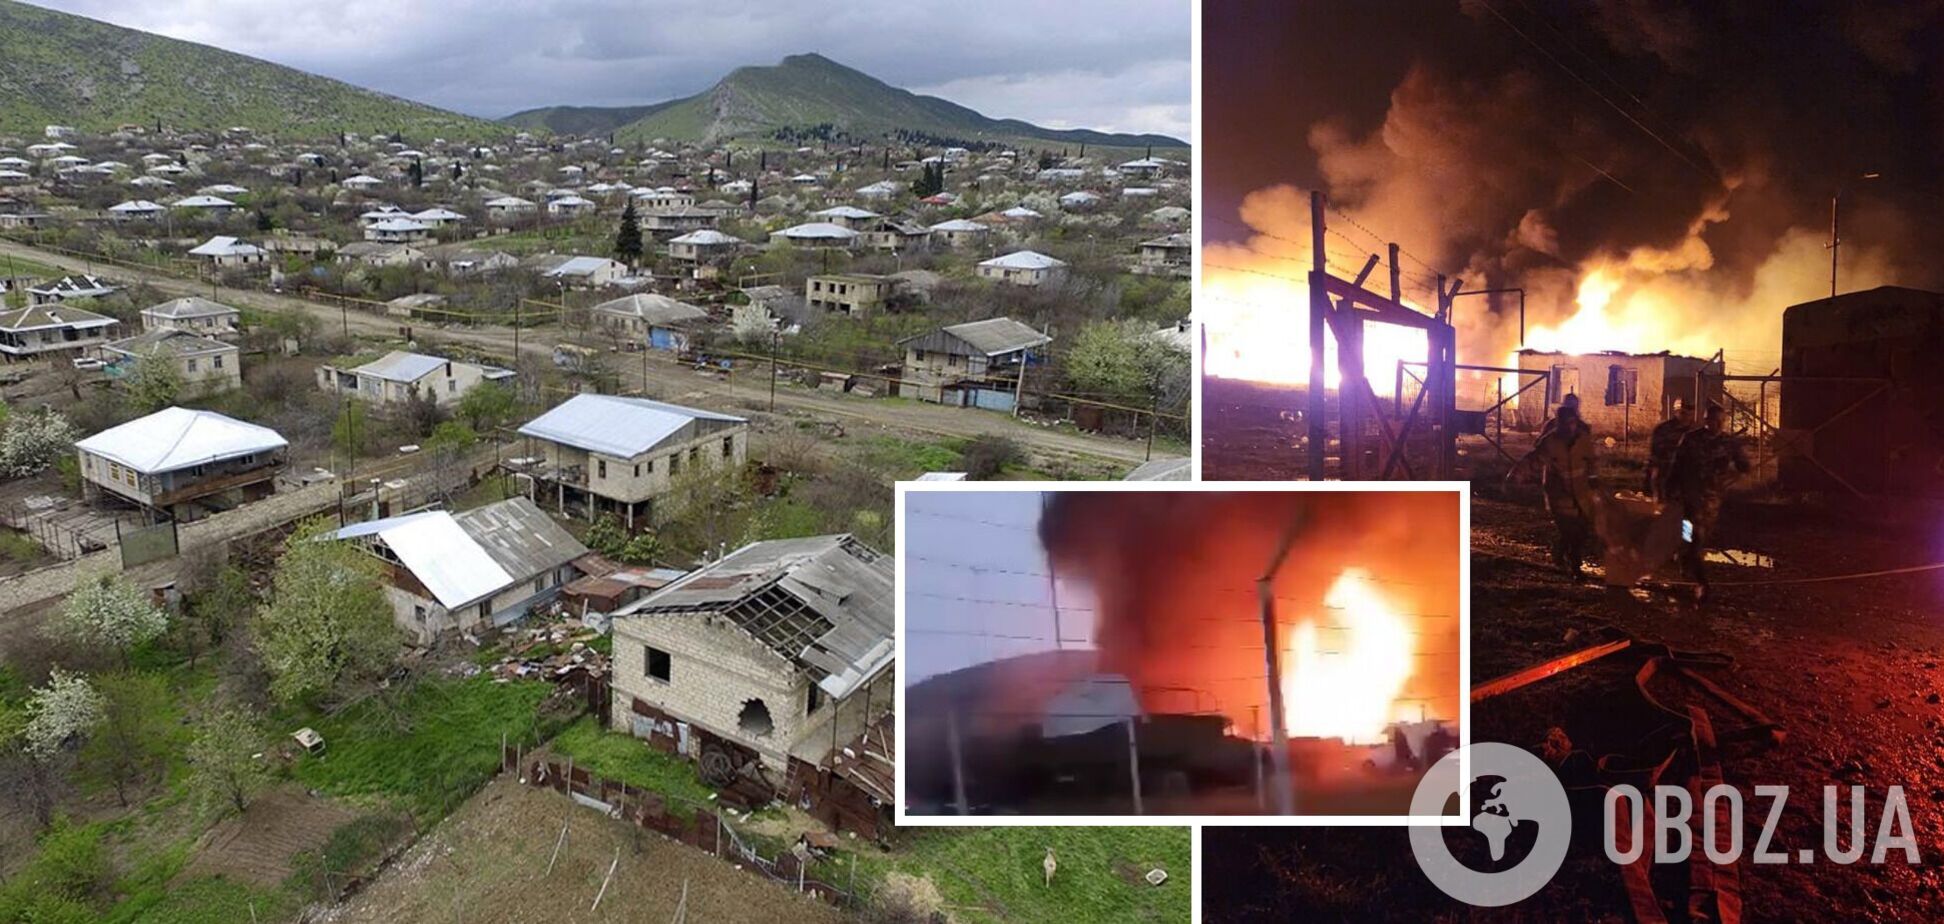 В Нагорном Карабахе произошел взрыв на складе бензина: есть погибшие и более 200 пострадавших. Фото и видео